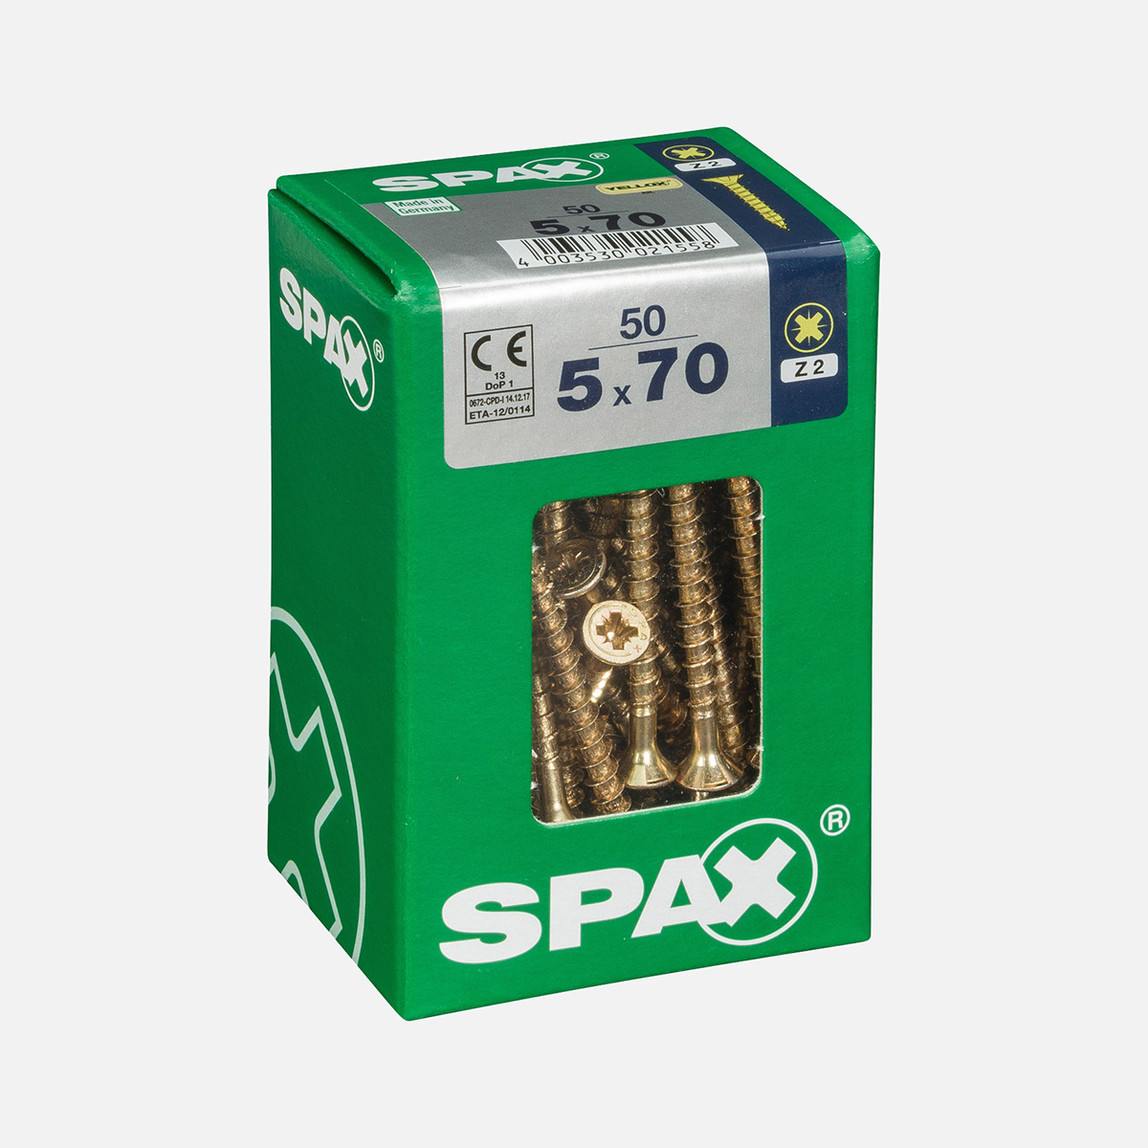    SPAX Havşa Vida Sarı 5X70       